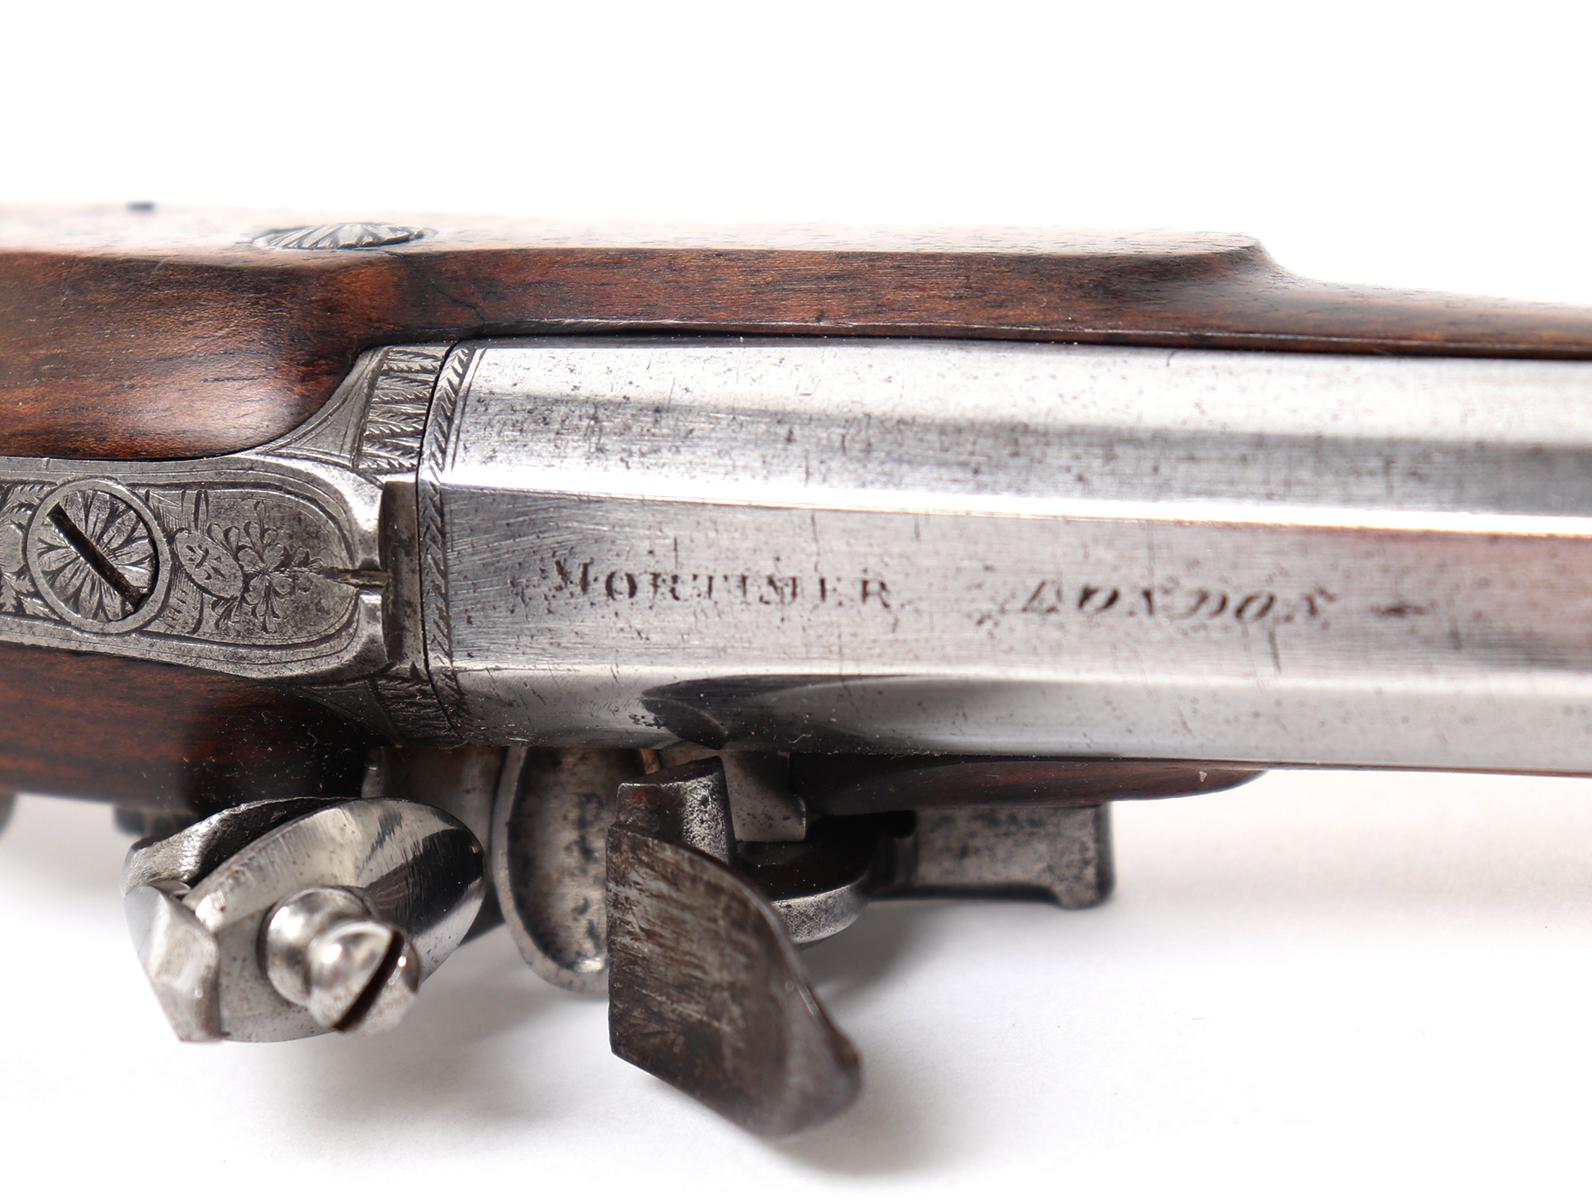 Cased Brace of English Flintlock Pistols, by " Mortimer London "